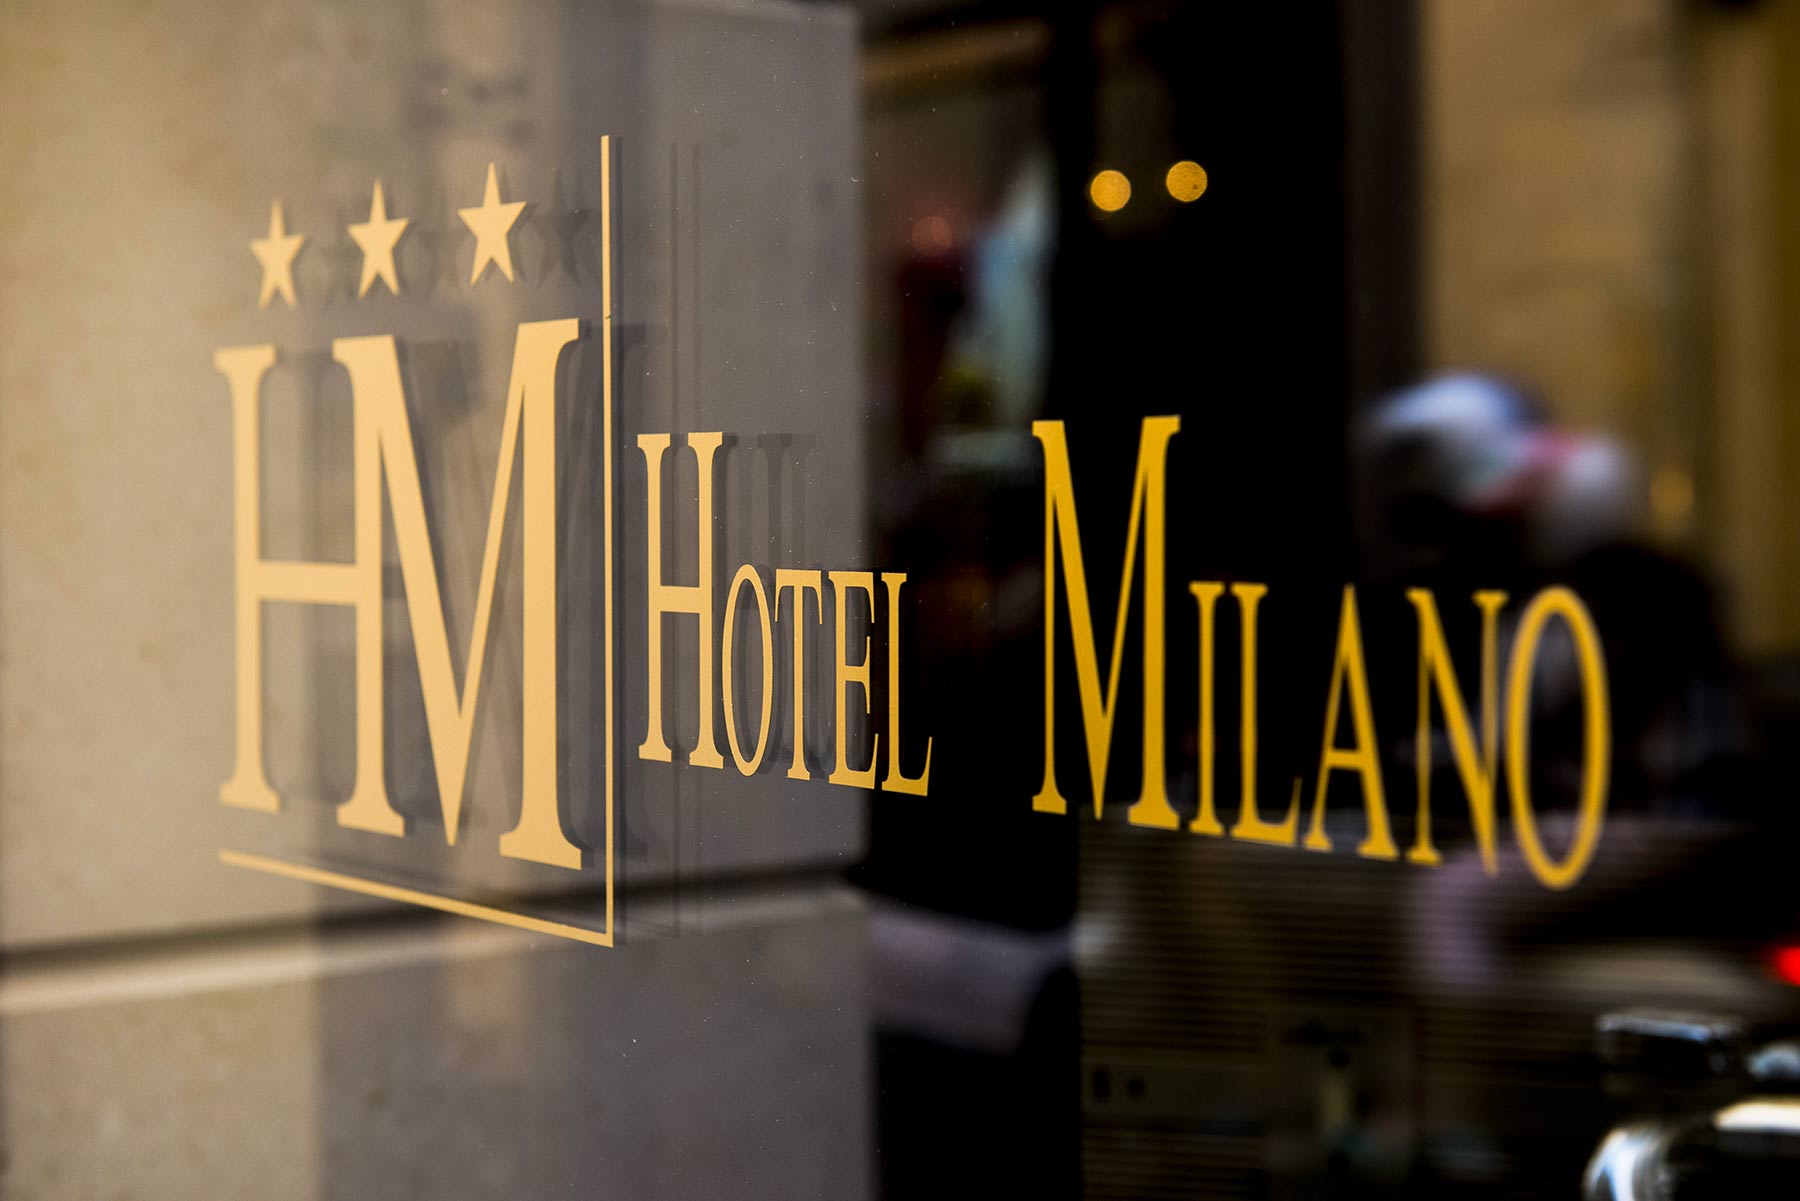 HOTEL MILANO